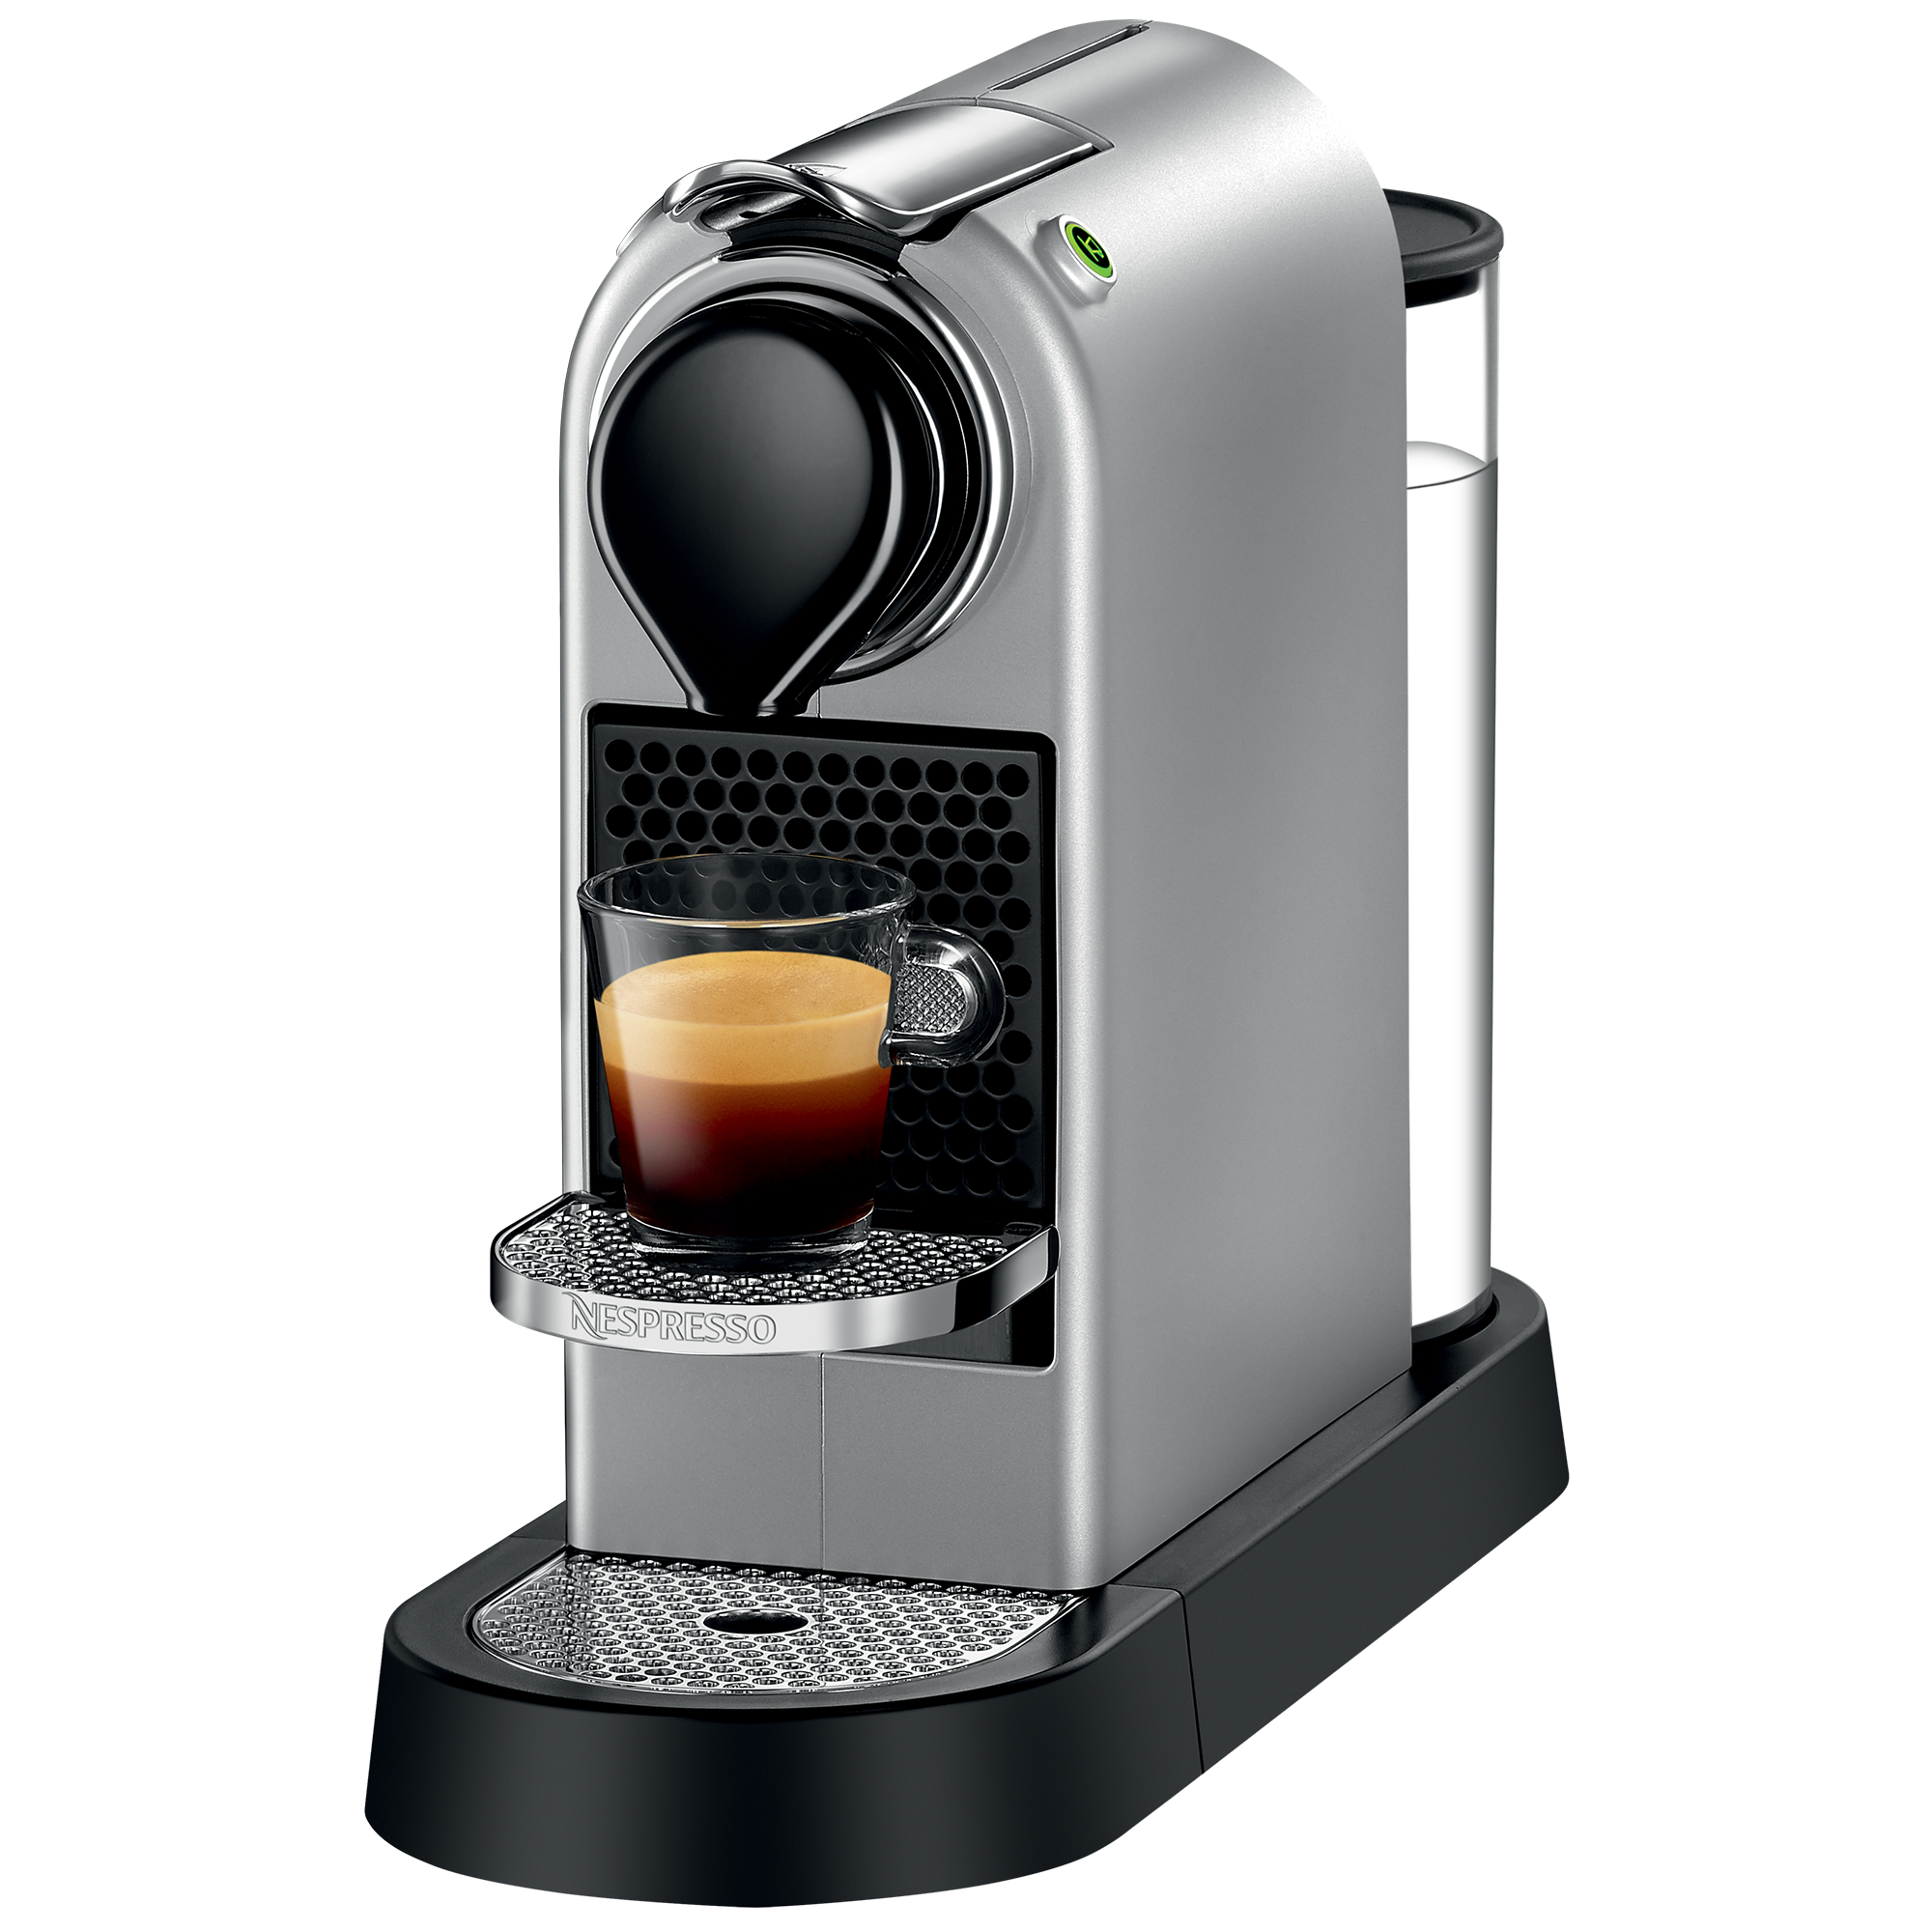 revelation Presenter Figure Nespresso Maschine kaufen | Nespresso